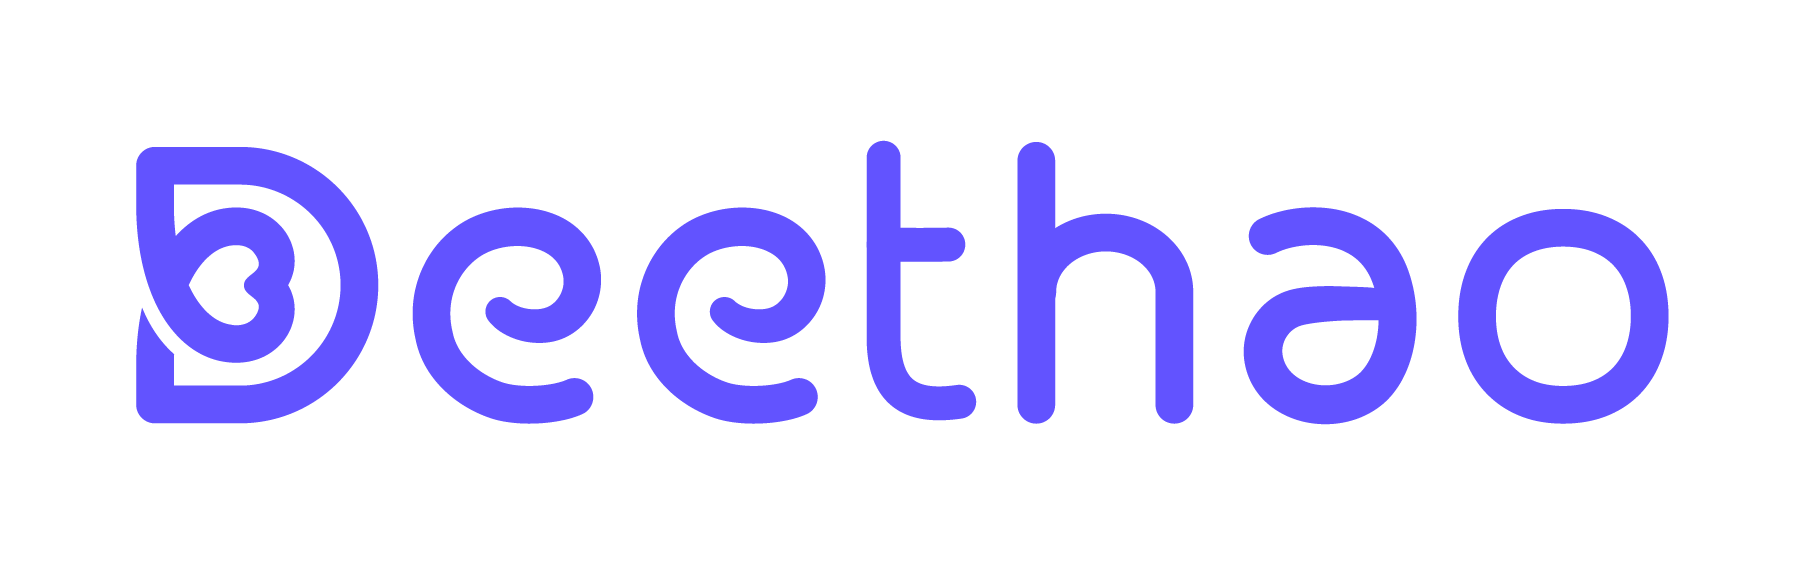 DeeThao Online Store